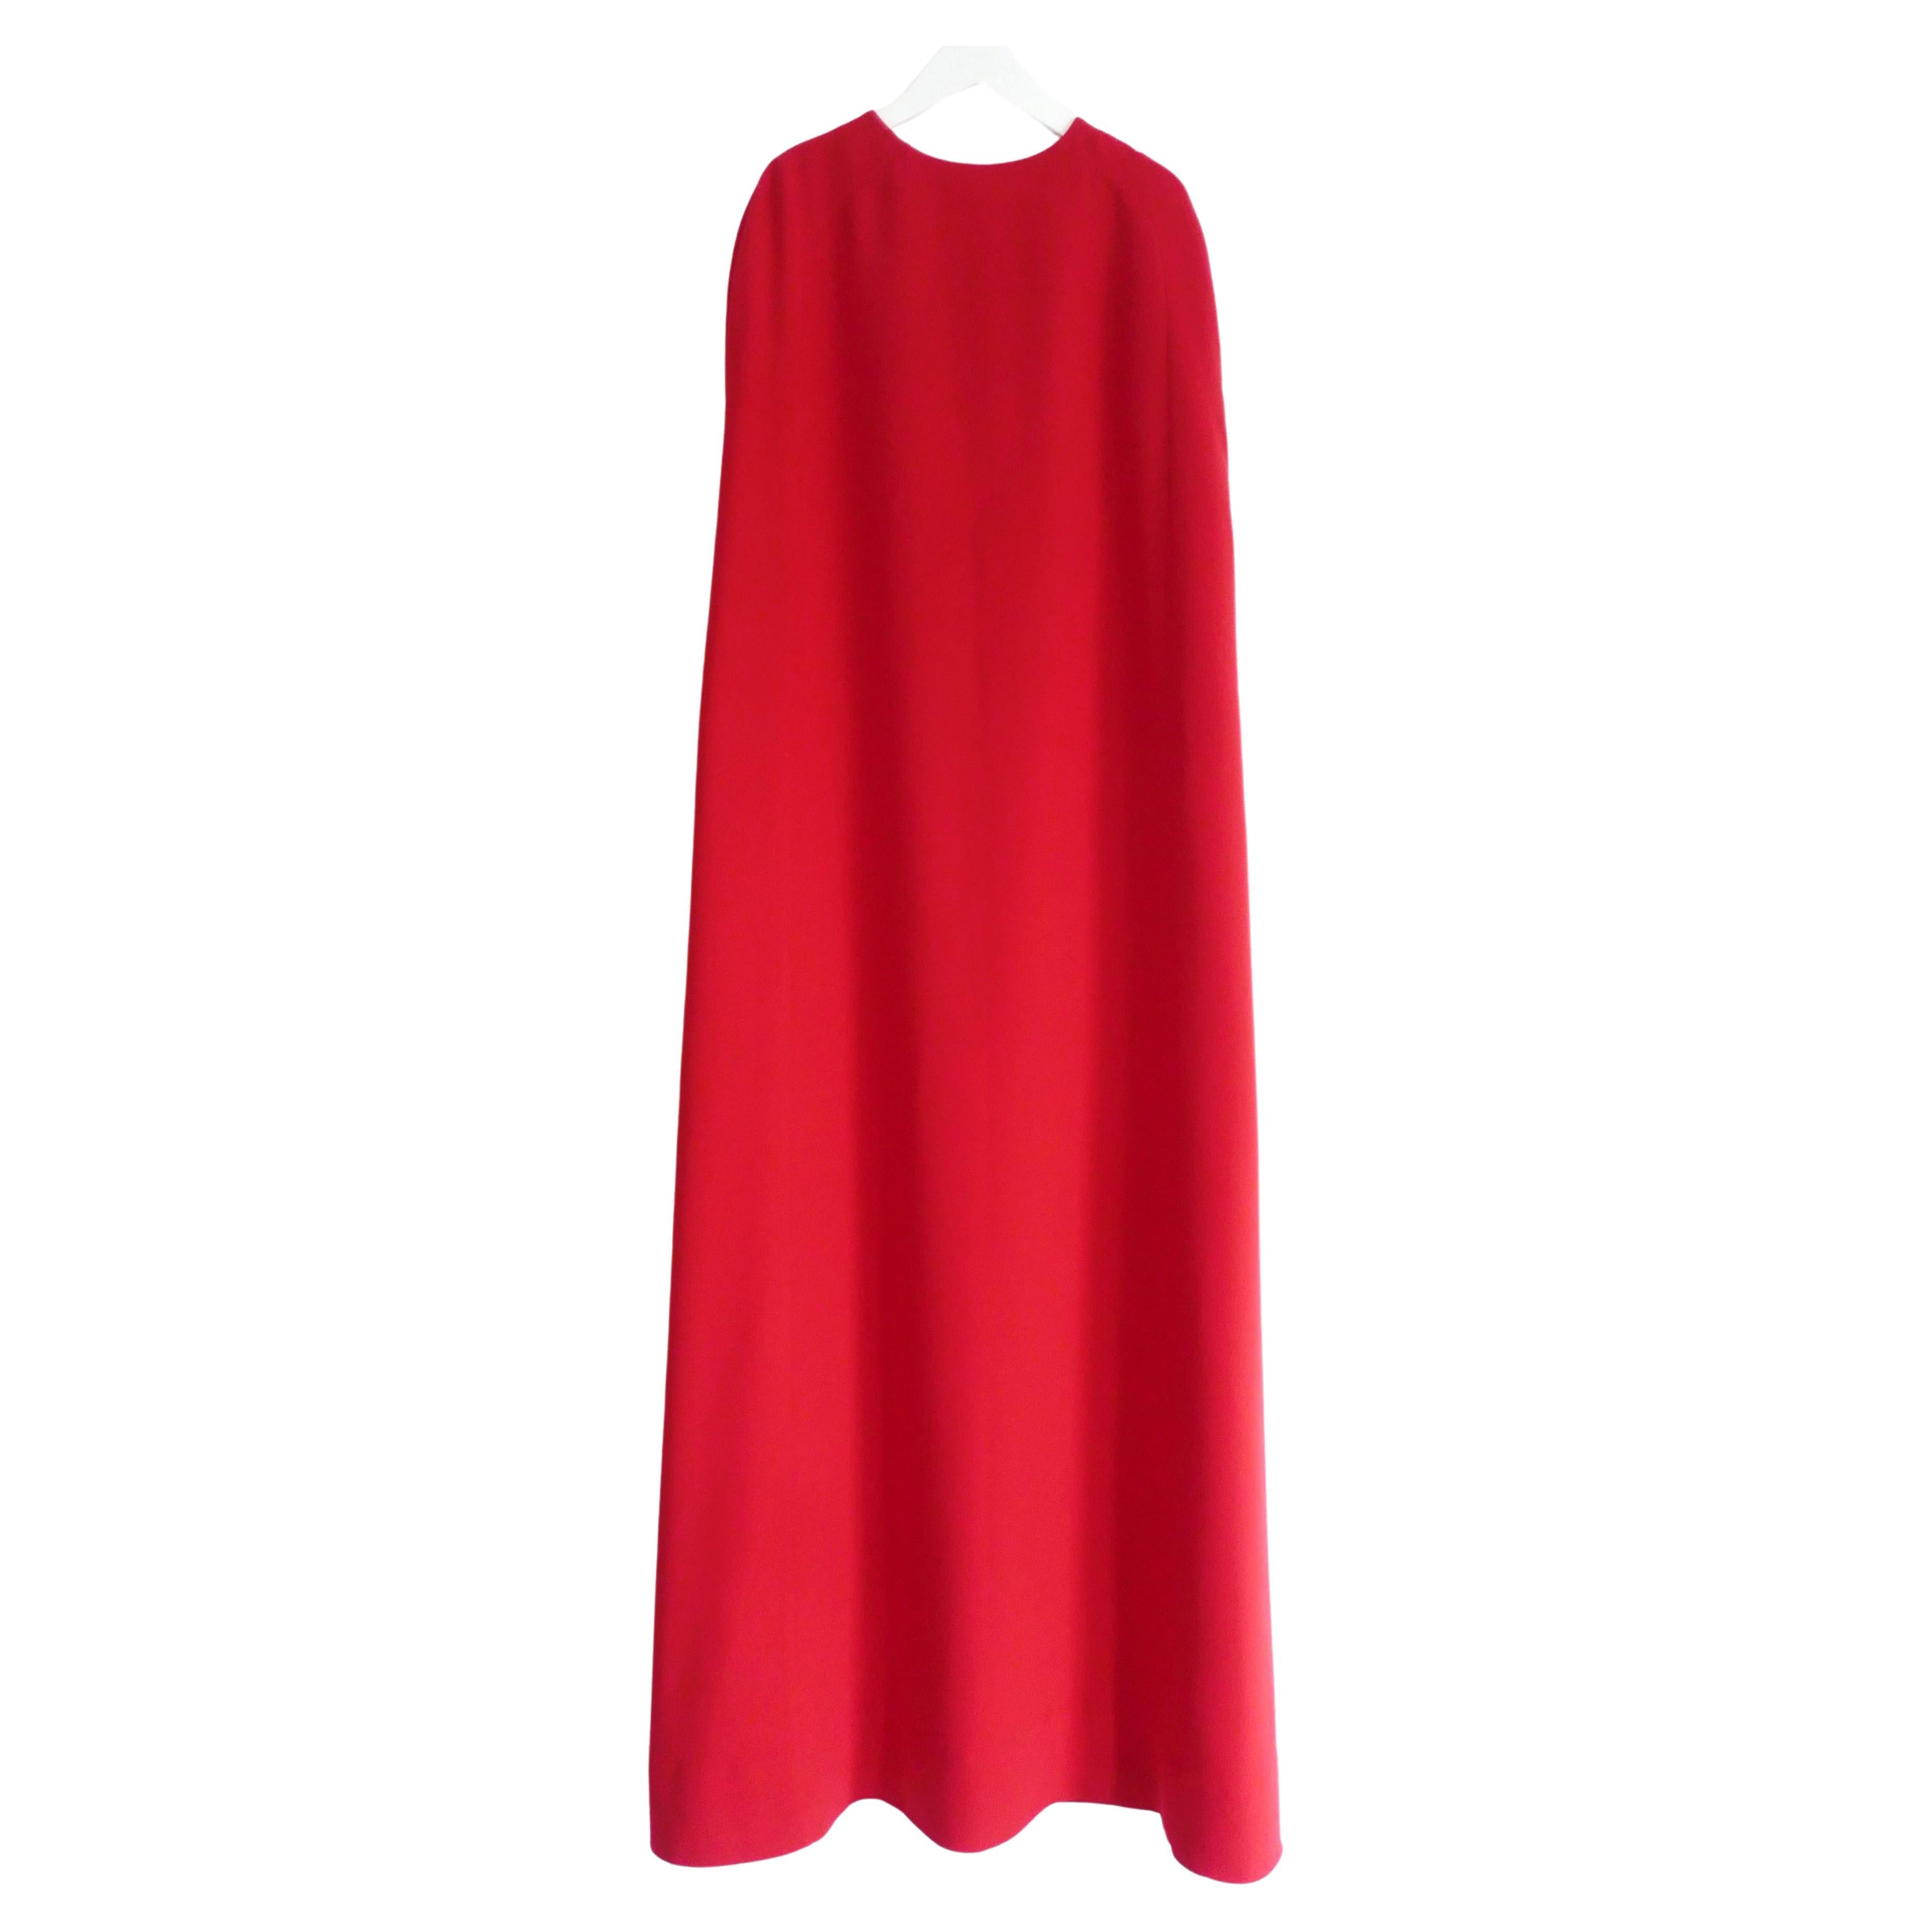  Robe cape rouge Valentino pré-automne 2014